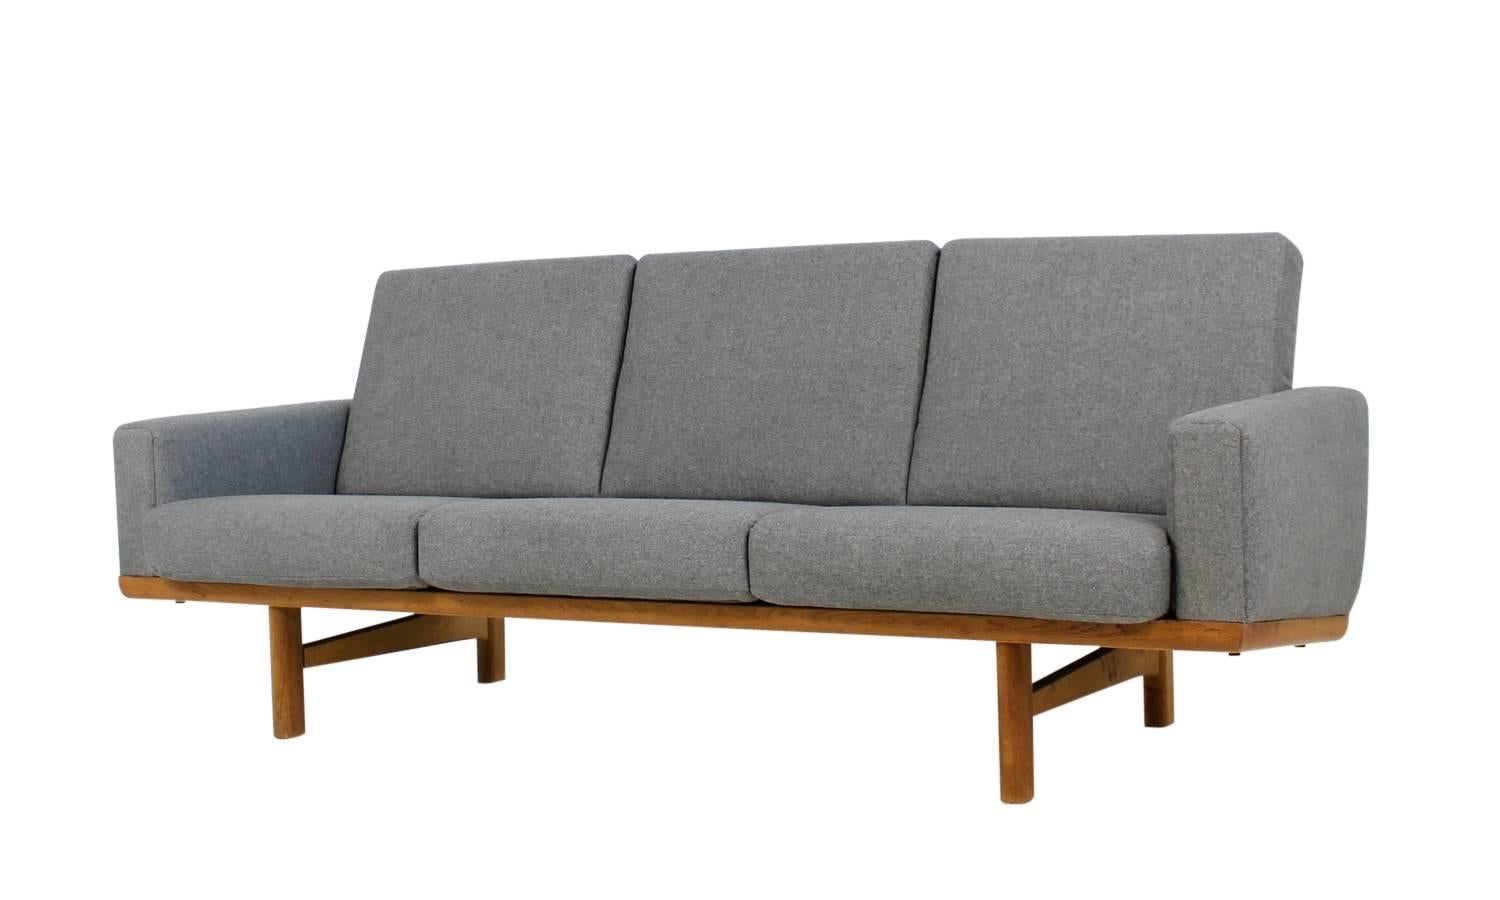 Fabric Beautiful Hans J. Wegner Oak Lounge Sofa Mod. 236 Getama Danish Modern Design